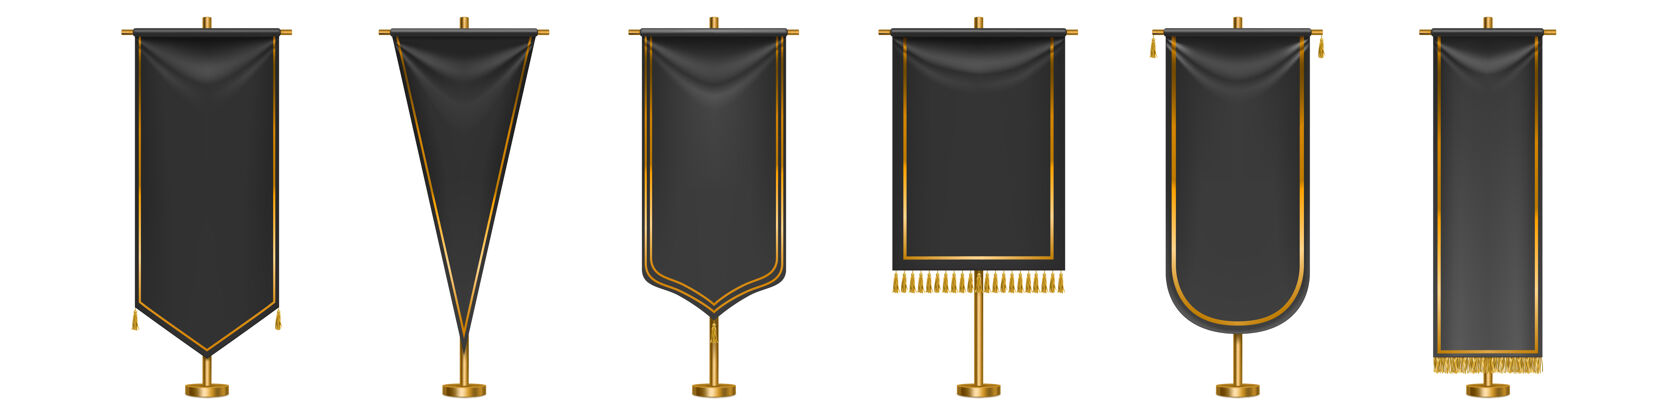 支柱黑色长旗子 金色流苏边 边缘孤立黑色纺织旗子 金色柱子上有不同形状旗帜模板空